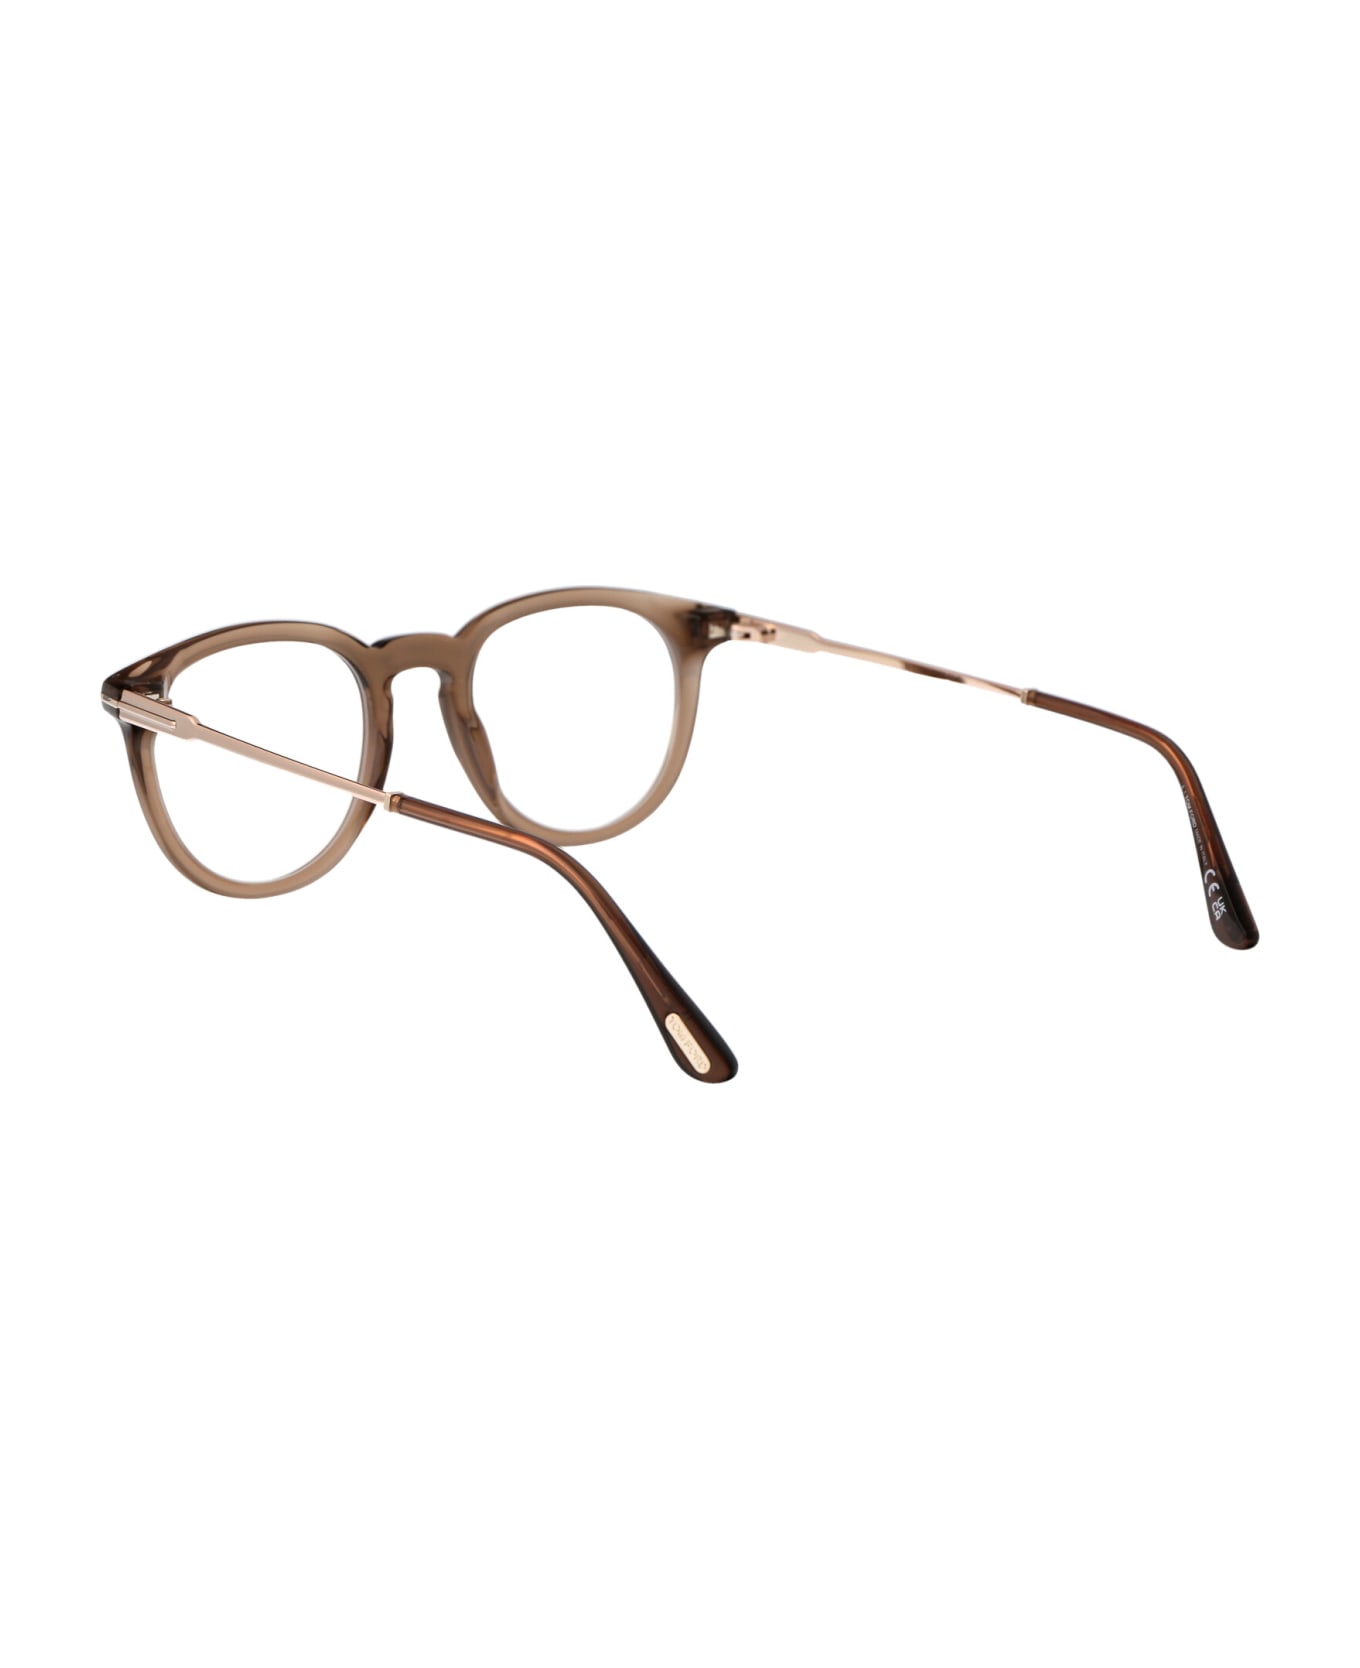 Tom Ford Eyewear Ft5905-b Glasses - 045 Marrone Chiaro Luc